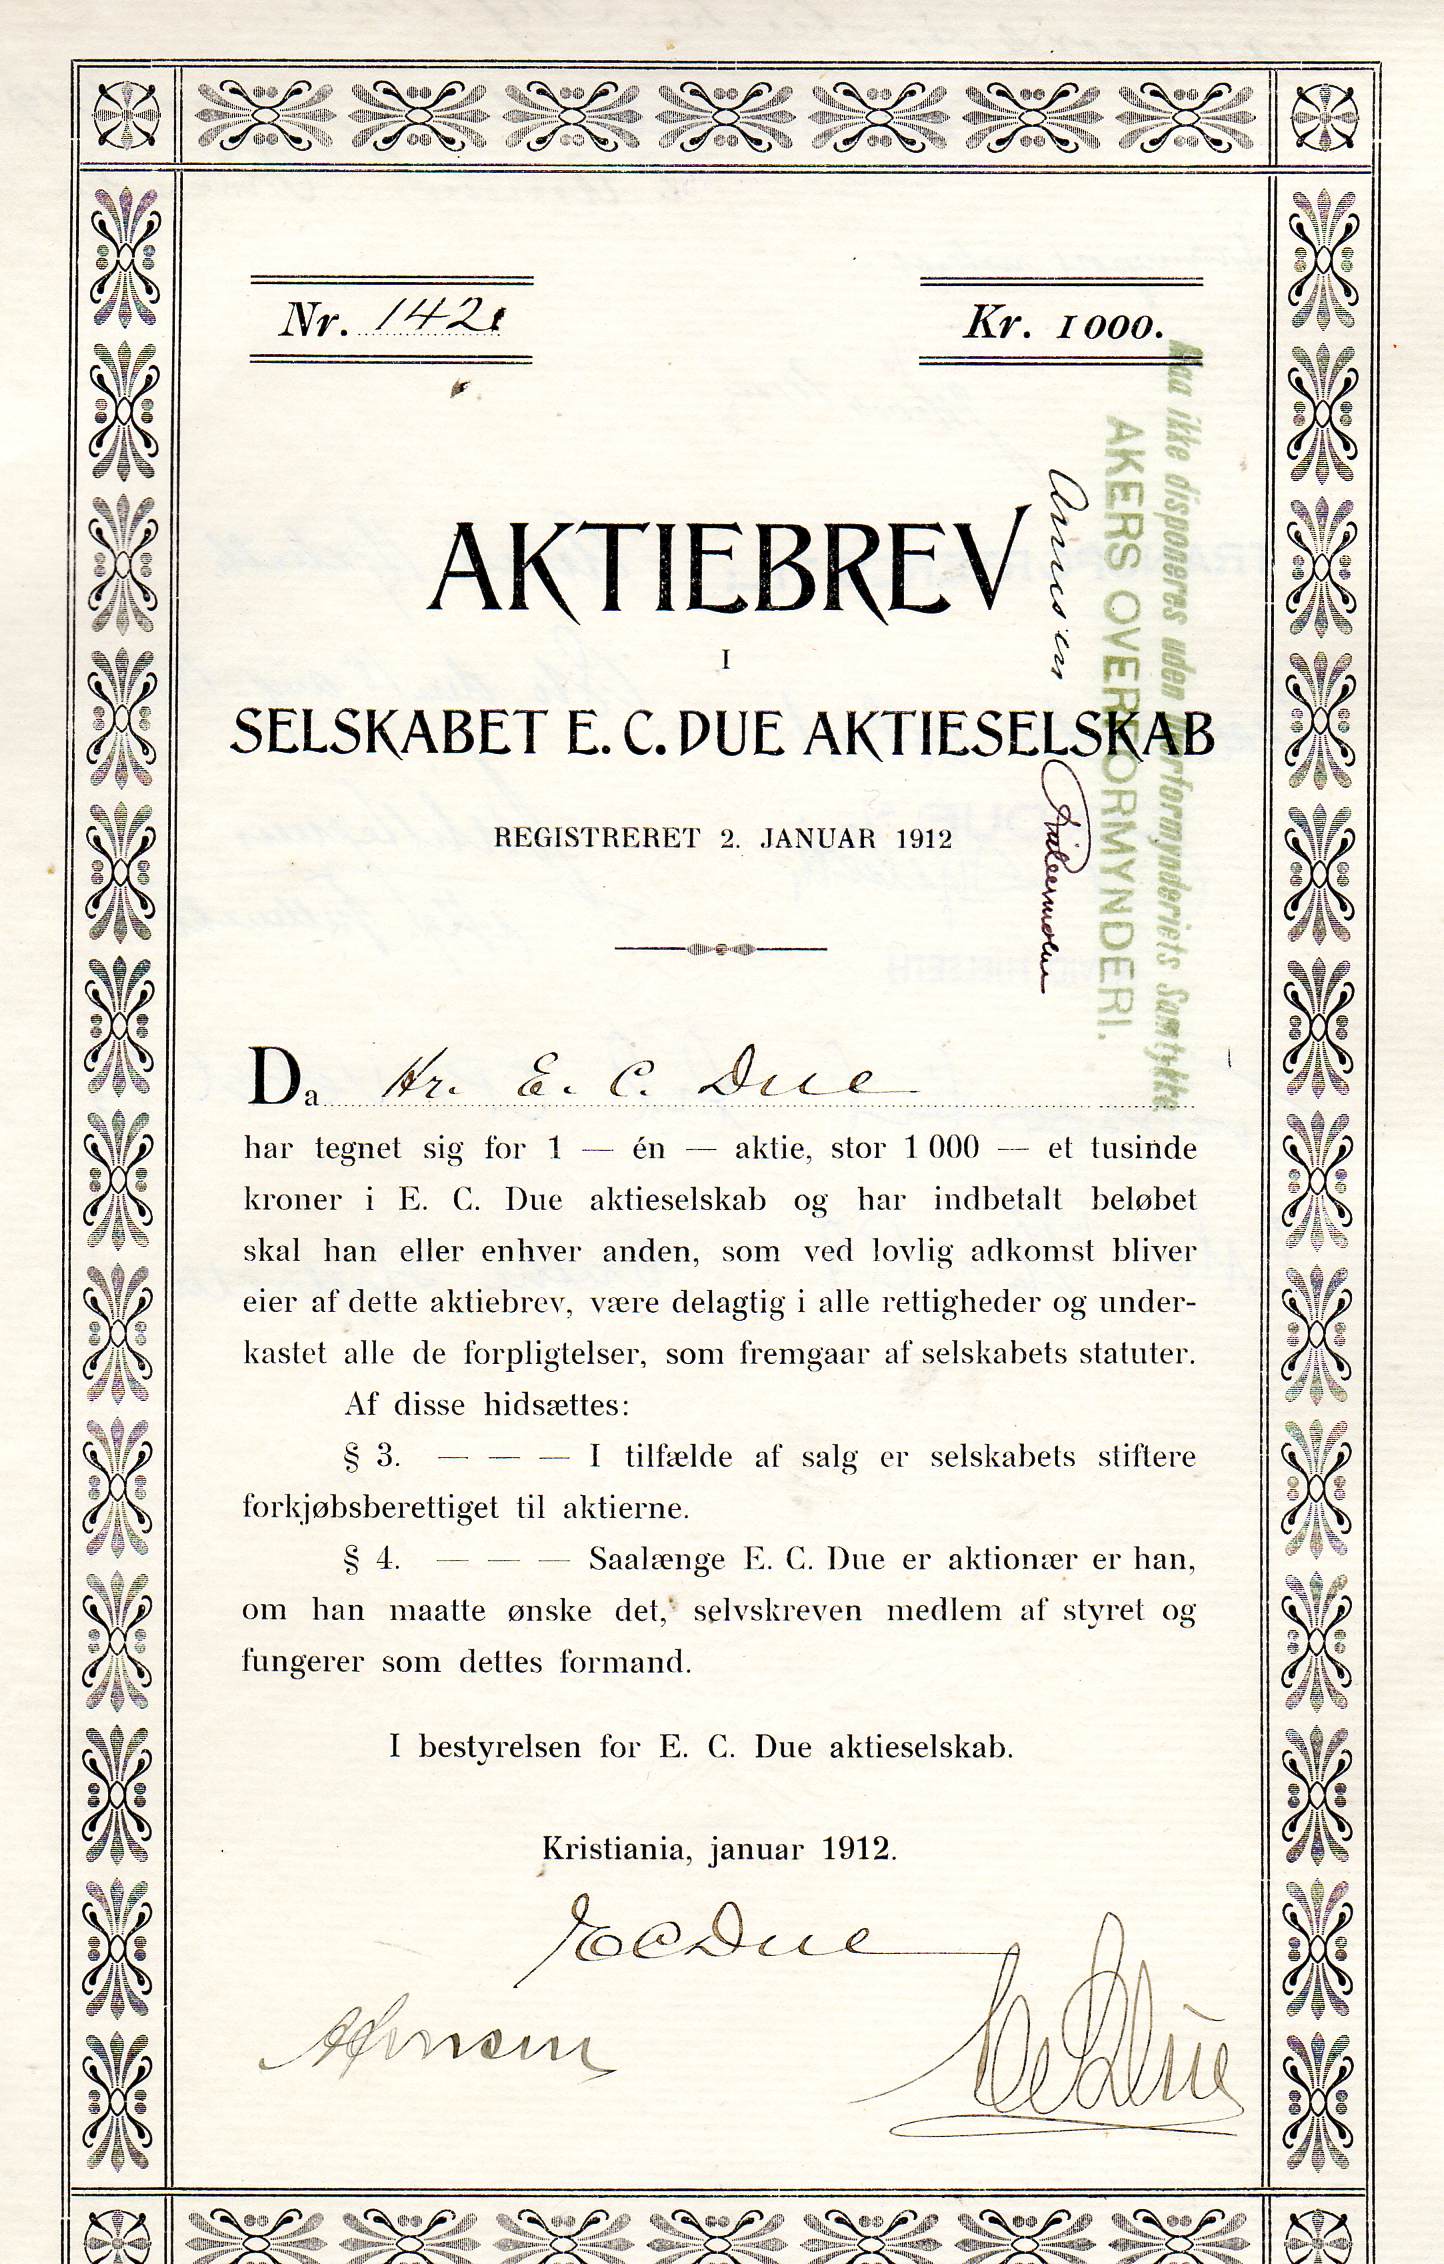 E C Due A/S Kristiania 1912 kr 1000 nr 1421/141/51 pris pr stk